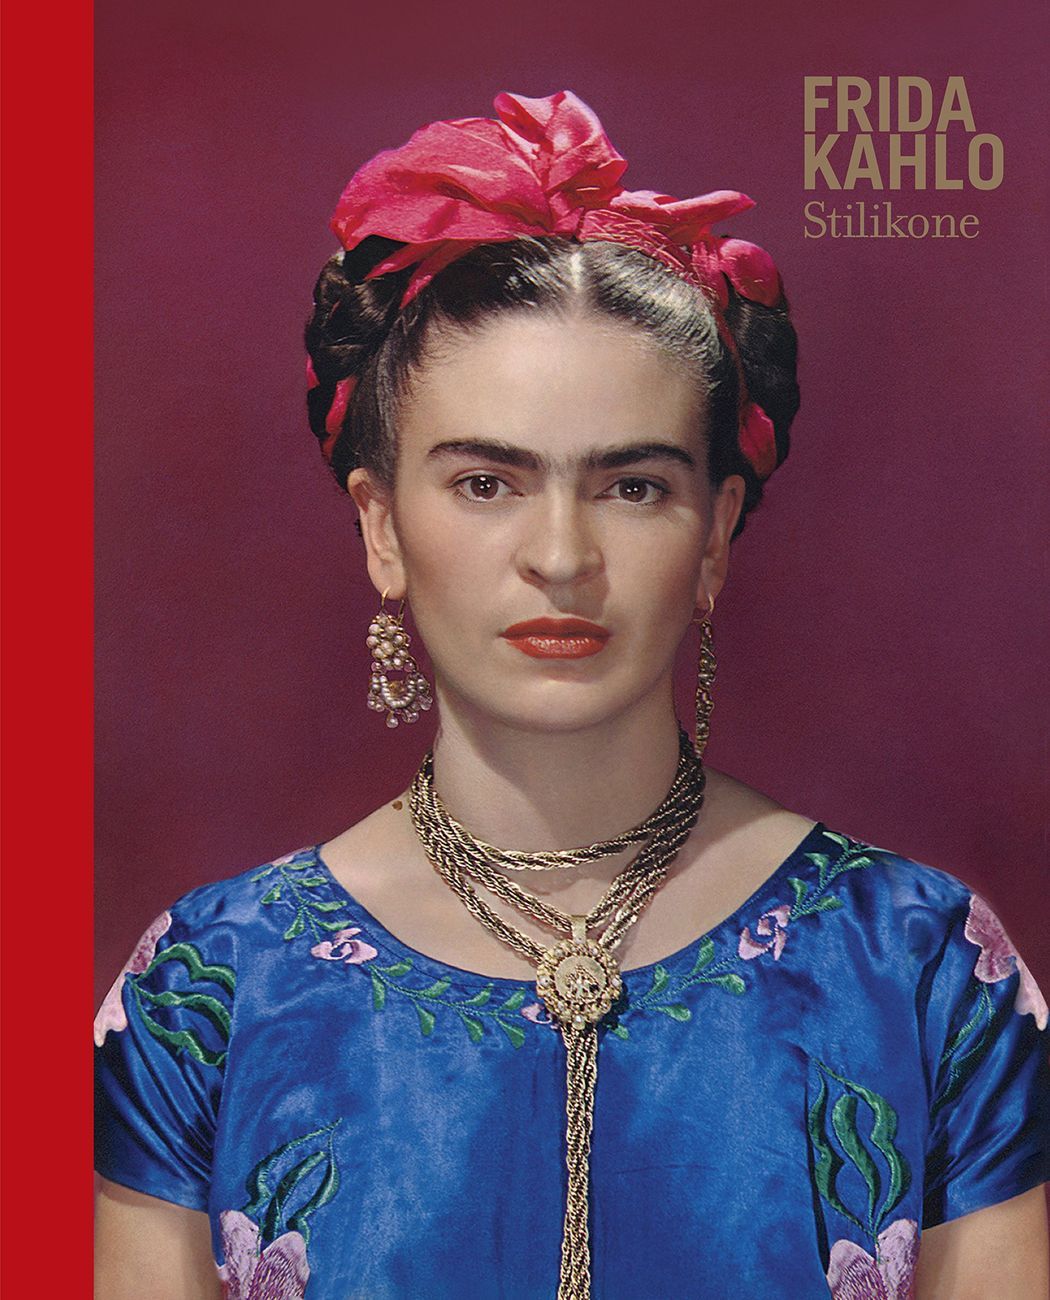 Claire Wilcox & Circe Henestrosa (eds.) – Frida Kahlo (Rizzoli, 2019)